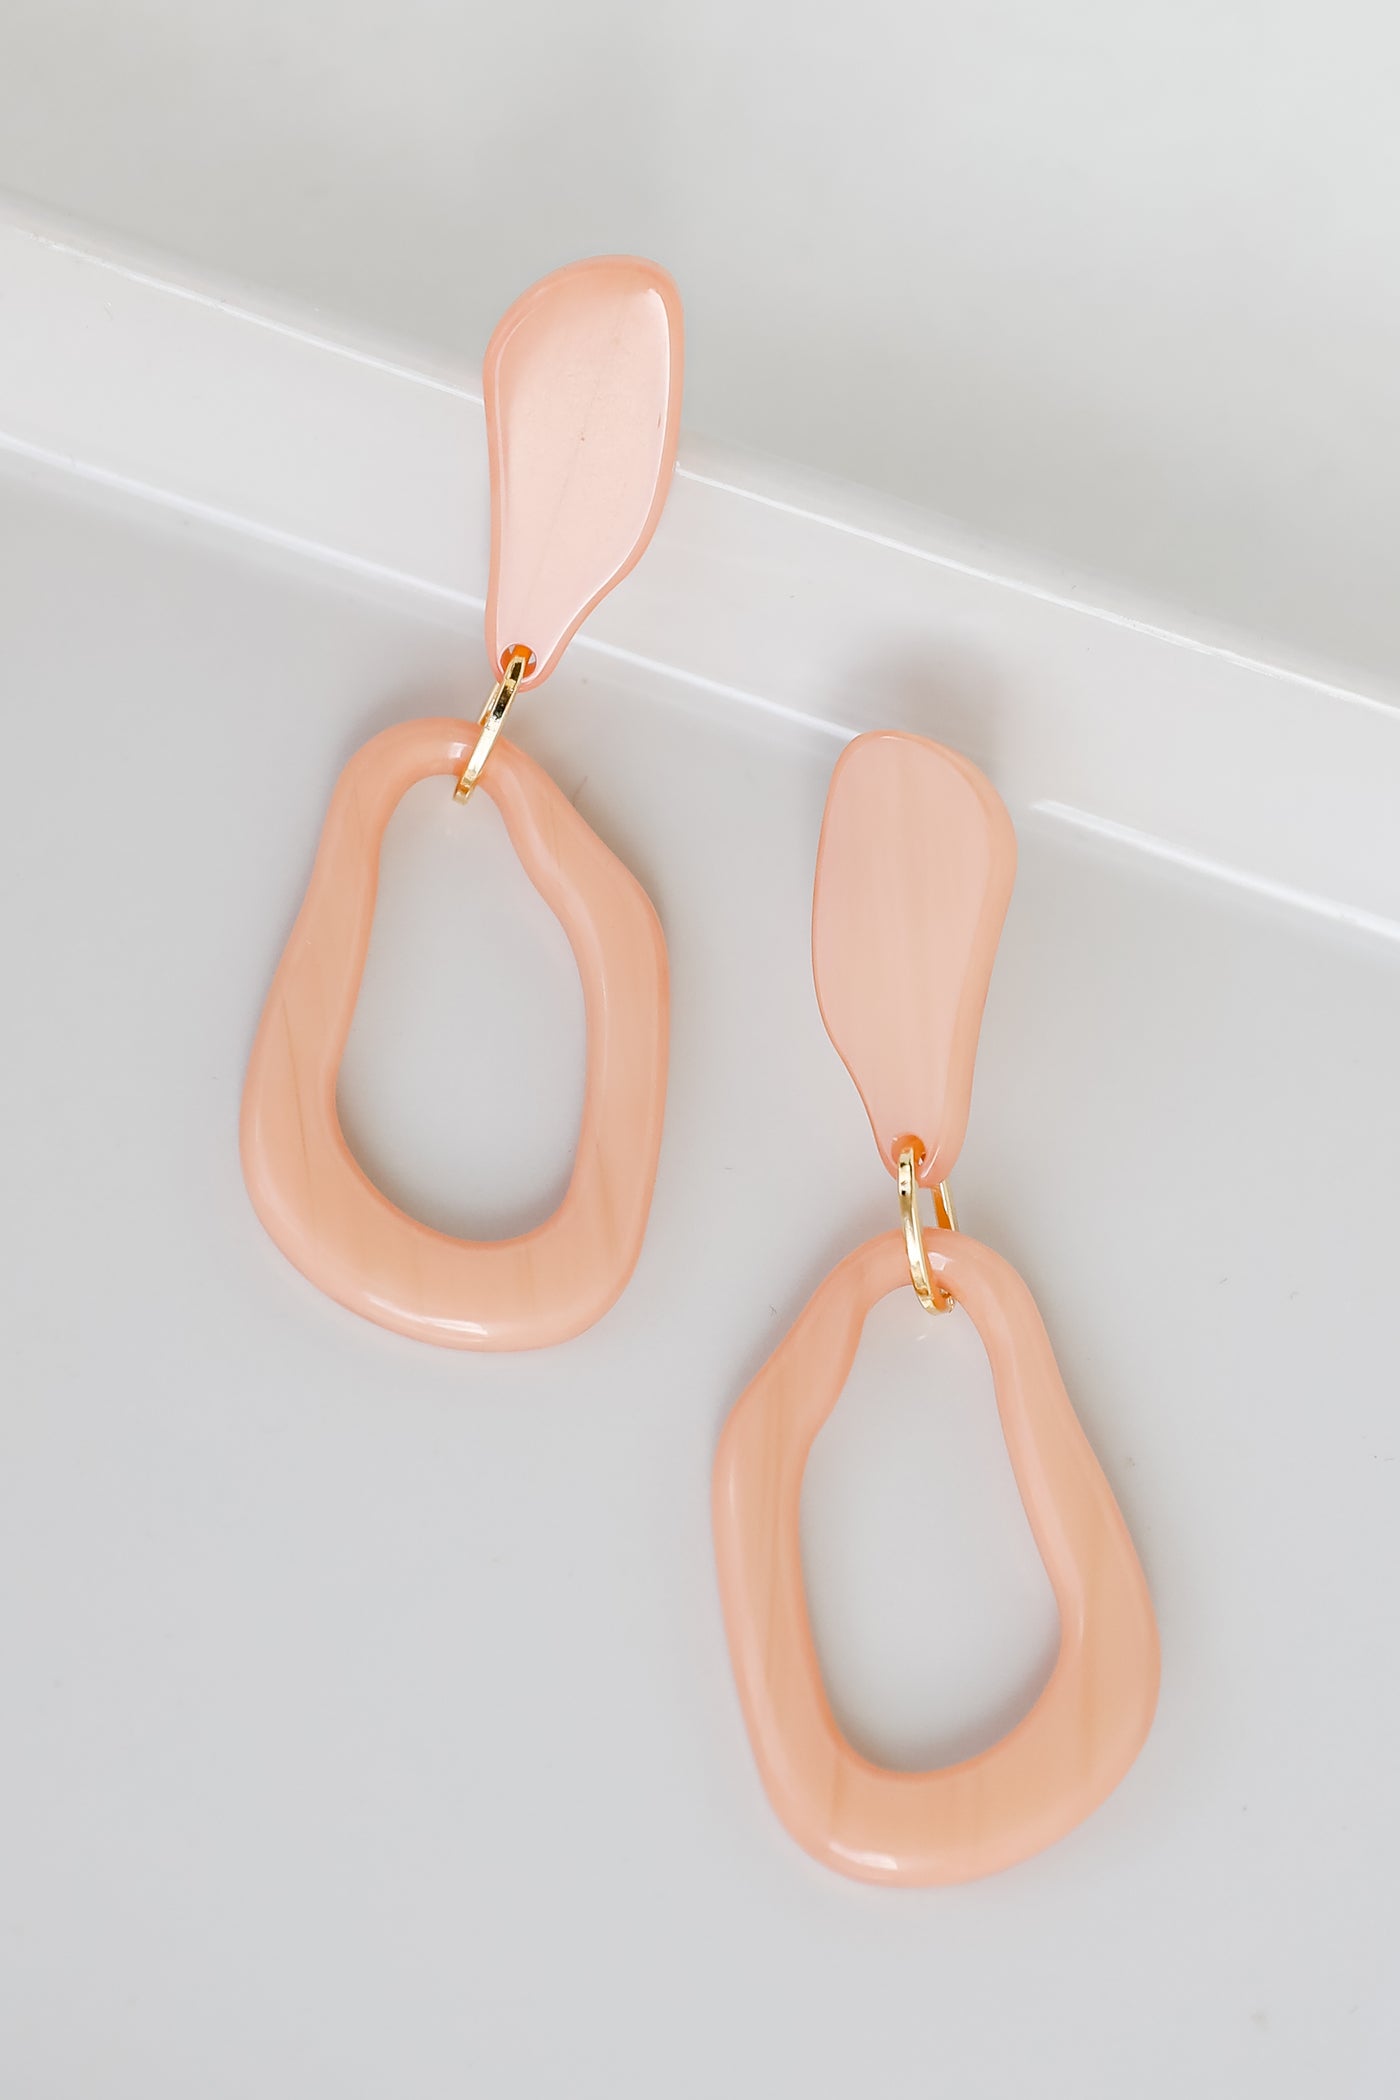 Acrylic Statement Earrings in peach